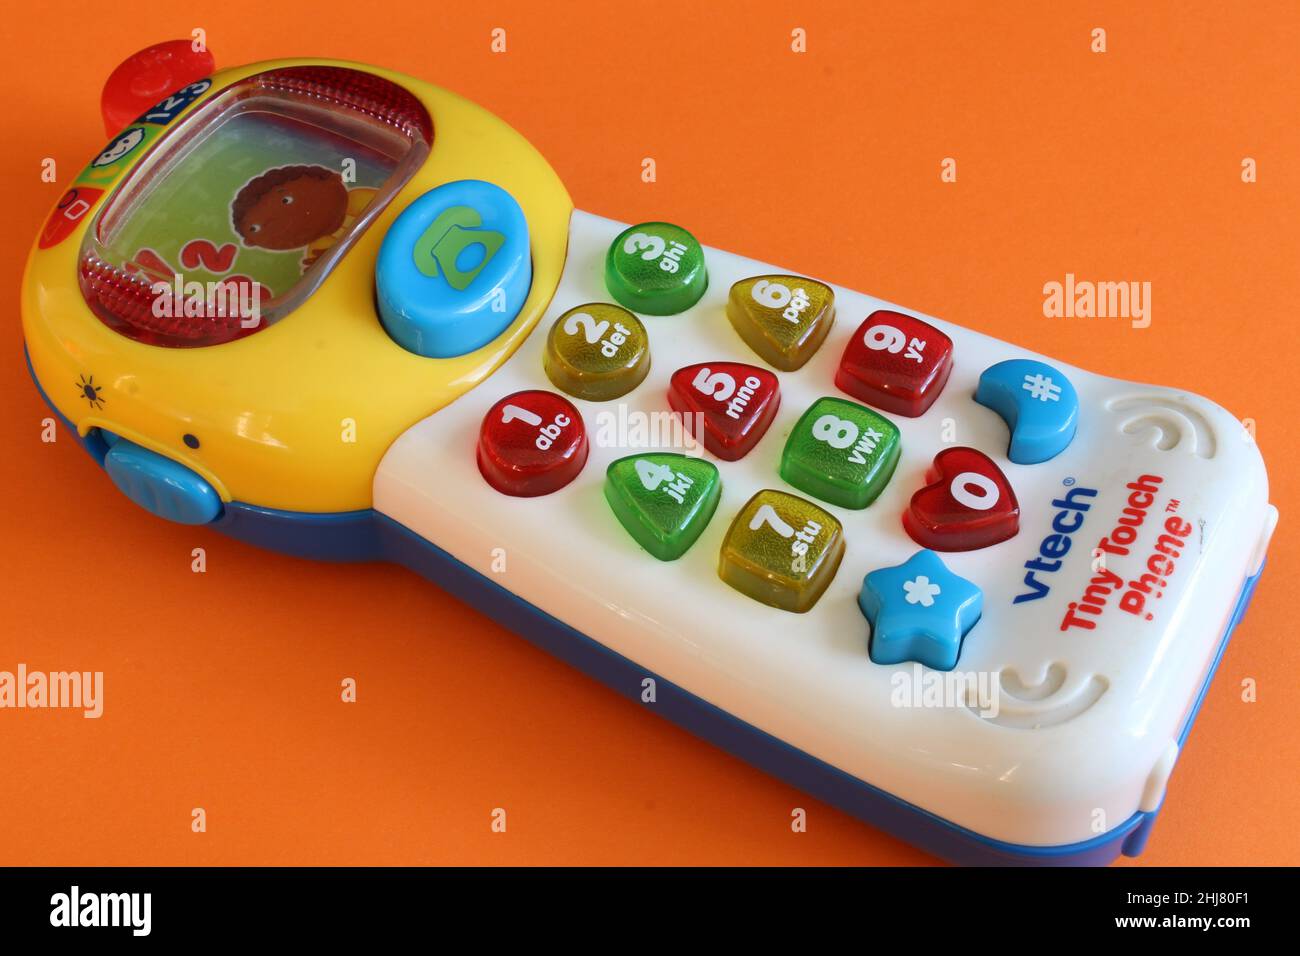 Telefono giocattolo immagini e fotografie stock ad alta risoluzione - Alamy